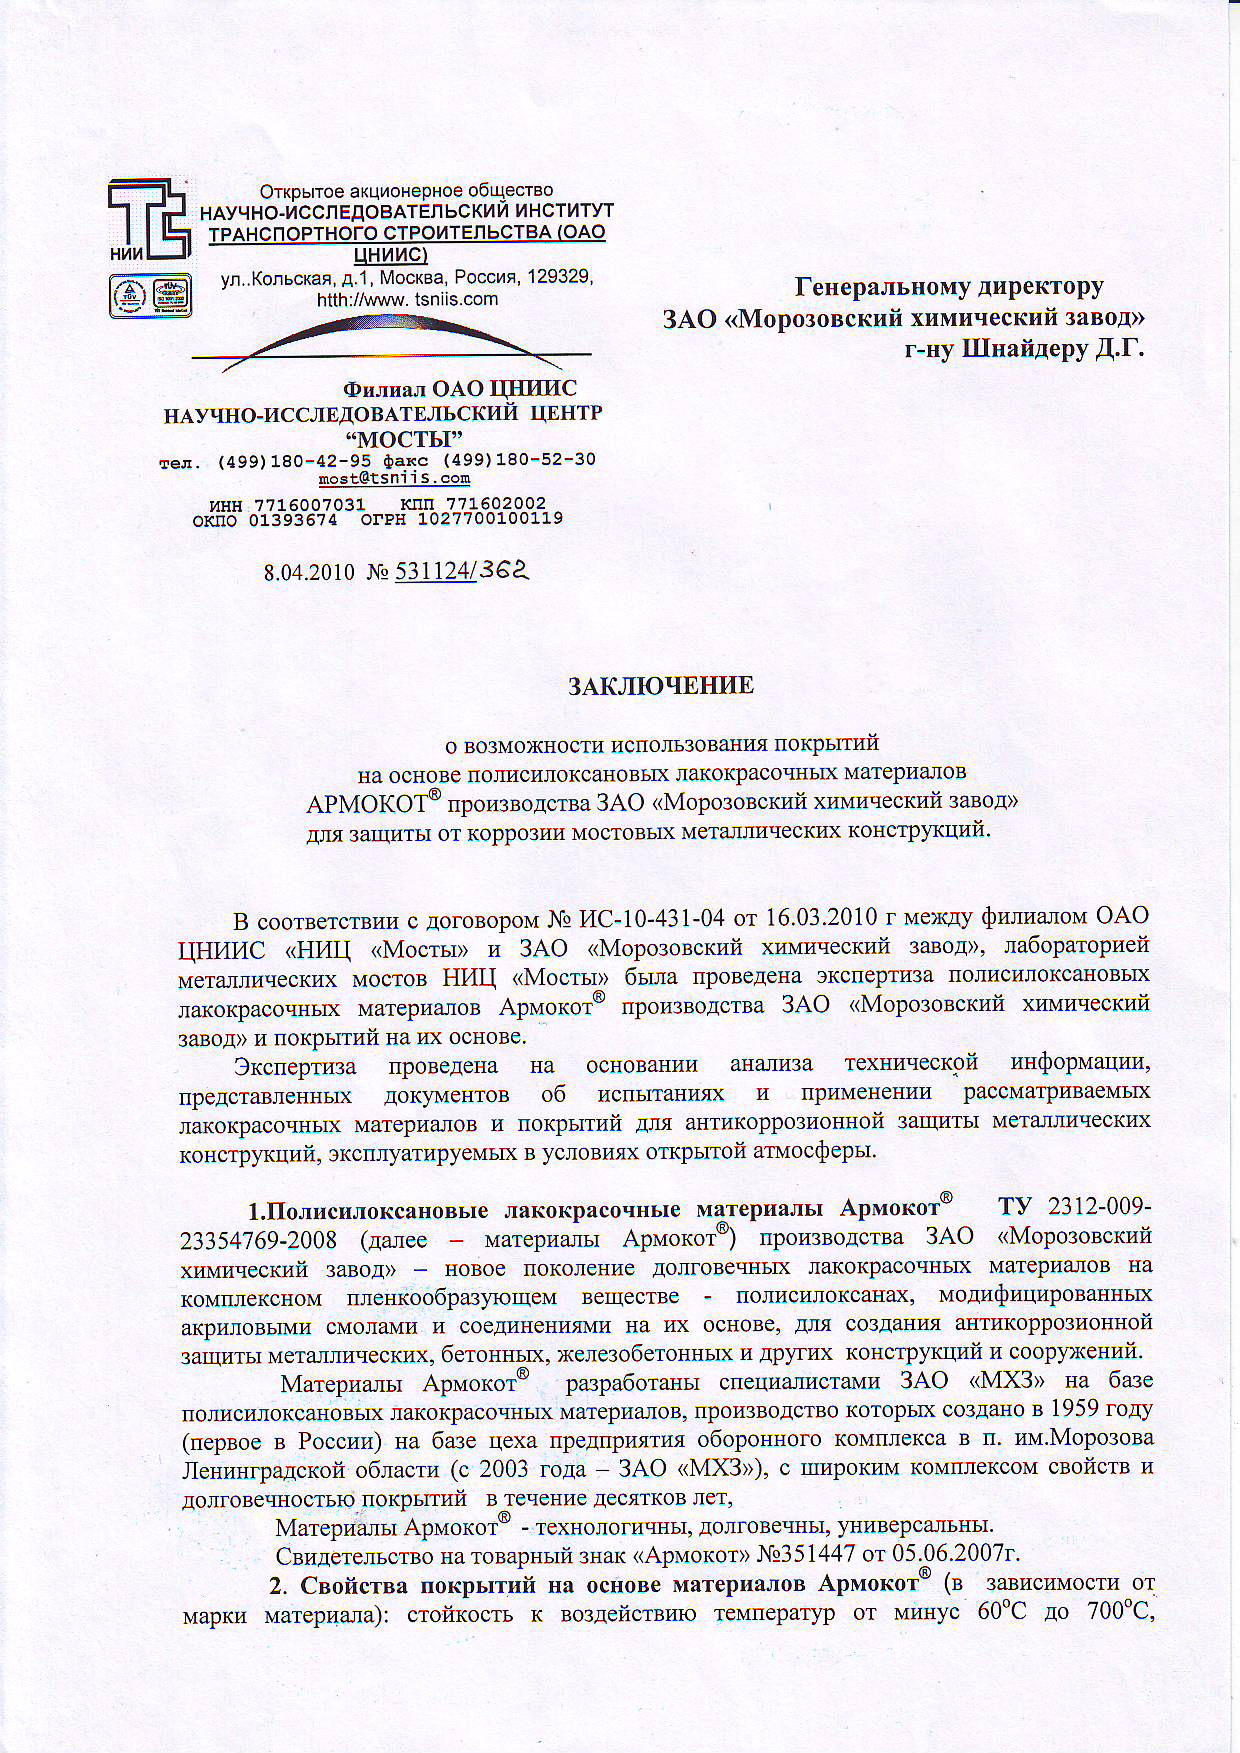 ЦНИИС-МОСТЫ заключение на систему Армокот 01-F100 25 лет 1 лист